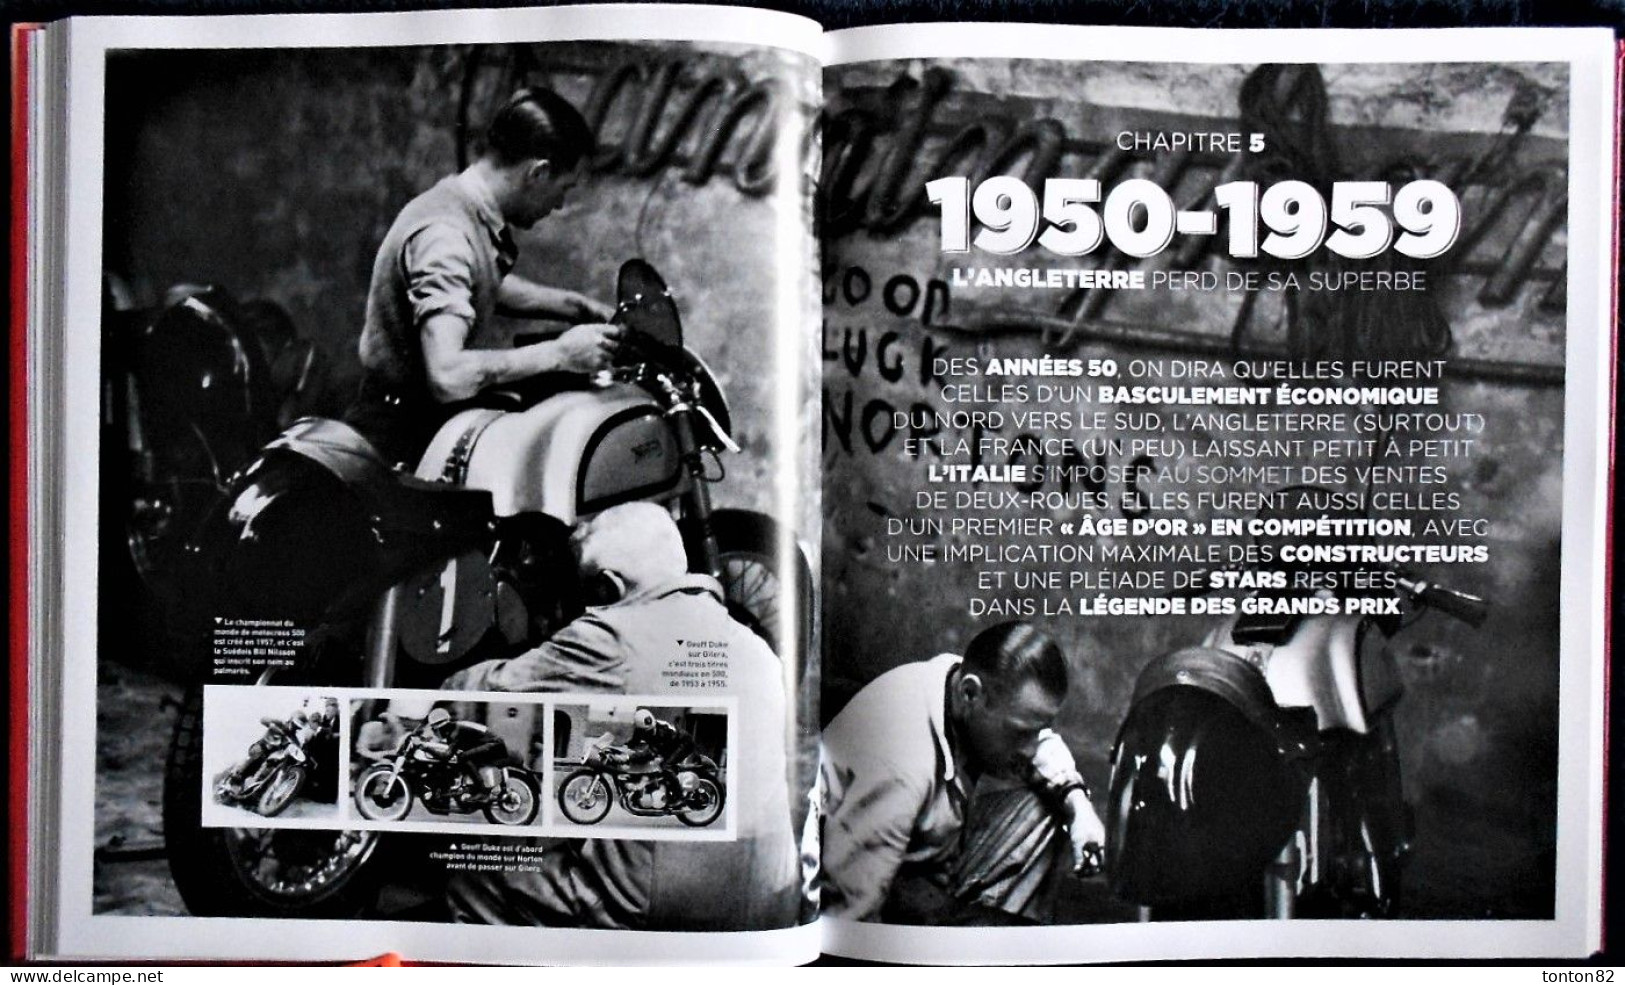 Christian Batteux - MOTO REVUE - 1913 / 2013 - 100 ans de MOTO - Hugo*Image - (2013) - Grand Format : 28.5 x 34 - 2.650g